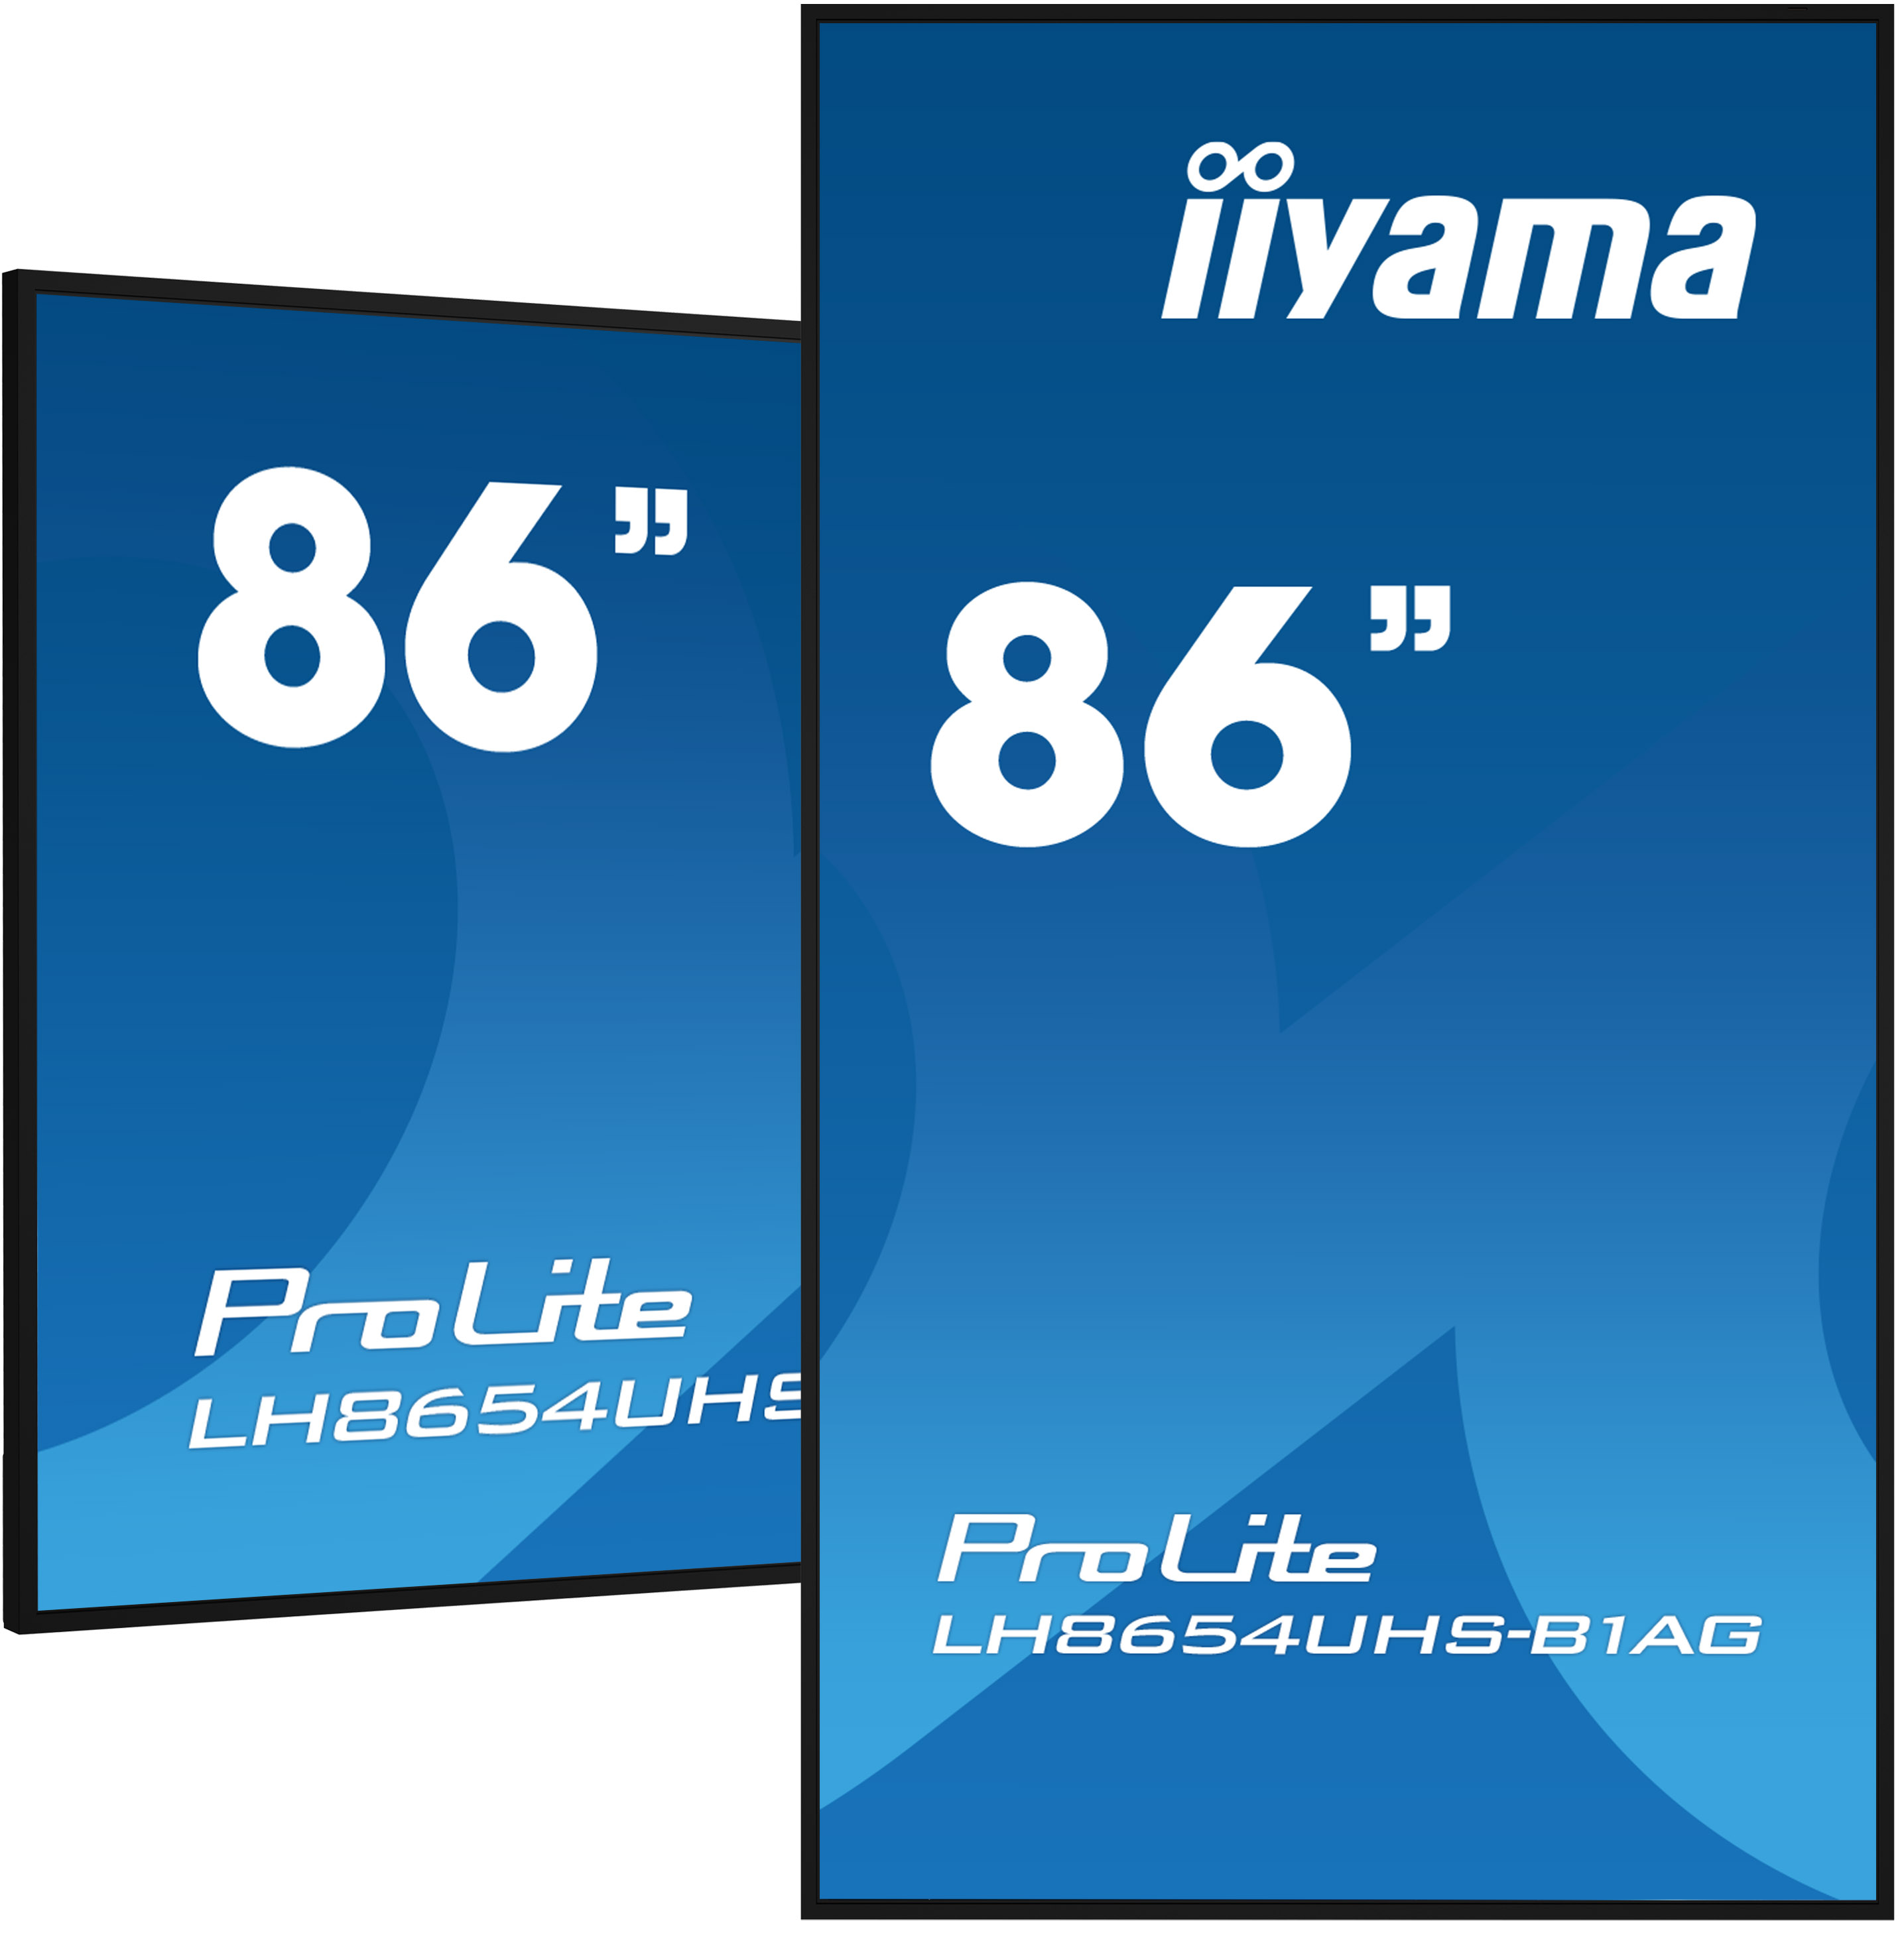 86" iiyama LH8654UHS-B1AG:IPS, 4K UHD. 24/ 7, Android 